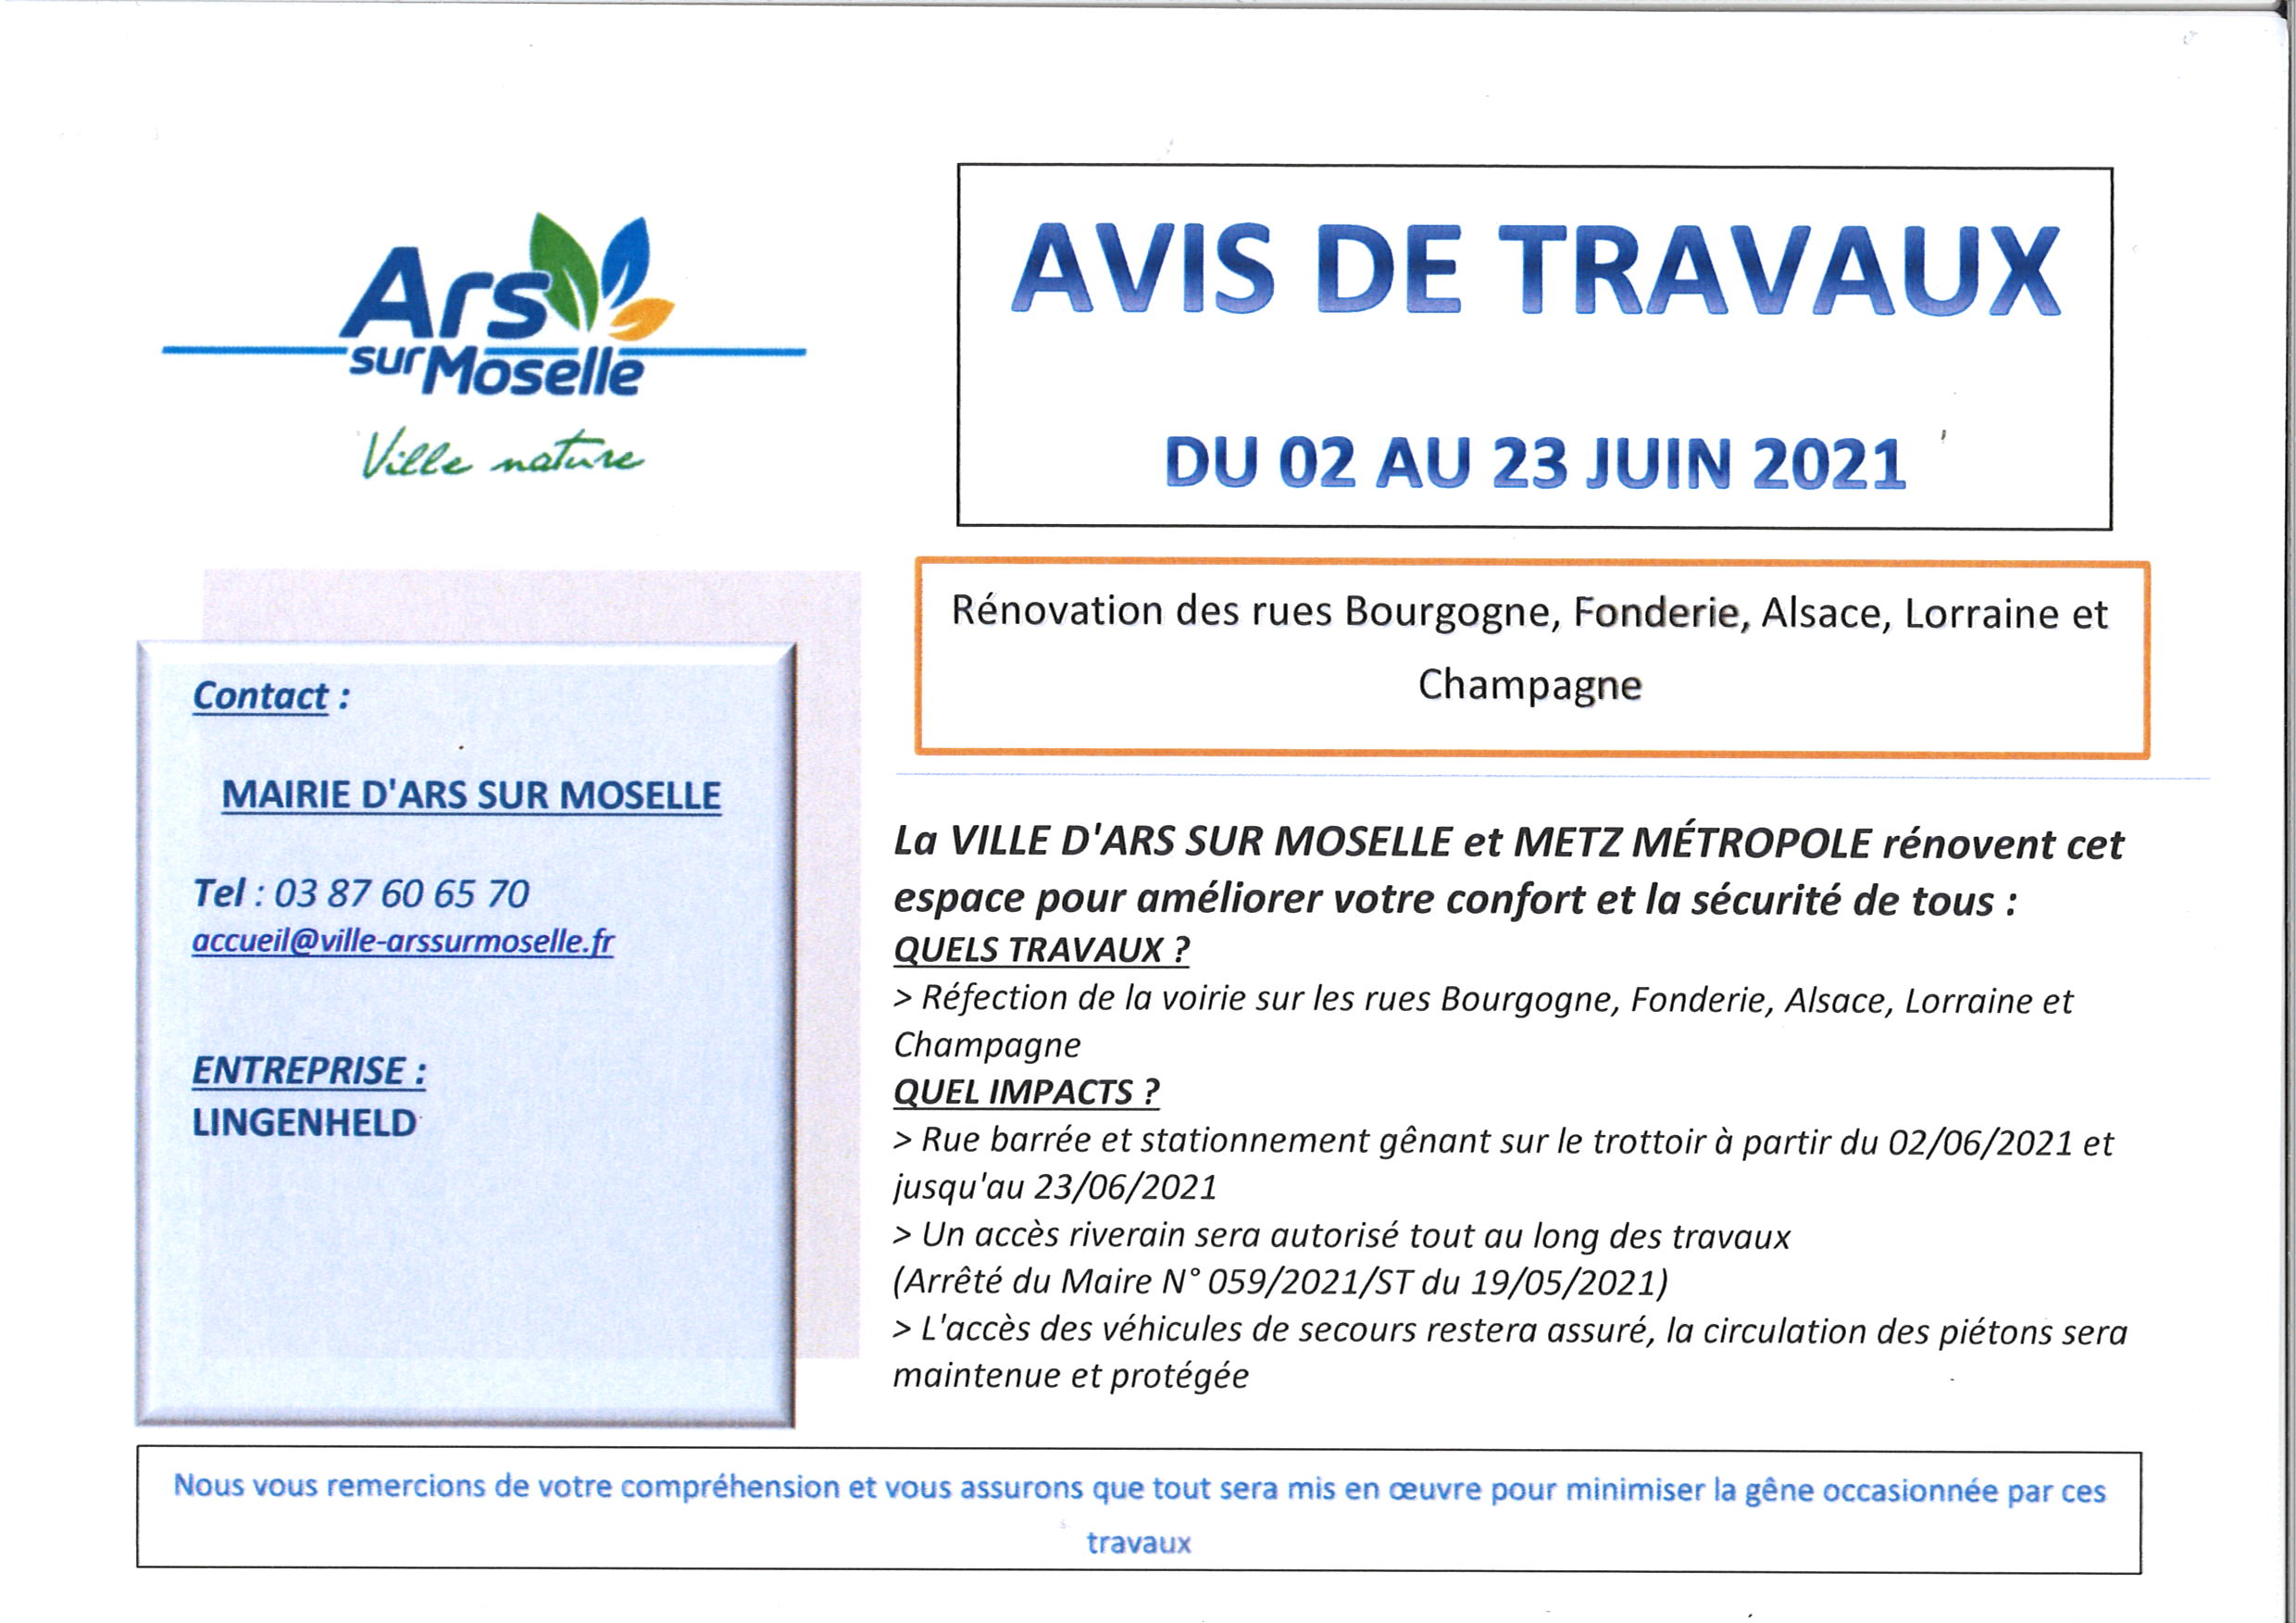 AVIS DE TRAVAUX rues Bourgogne, Fonderie, Alsace, Lorraine et Champagne du 2 au 23 juin 2021